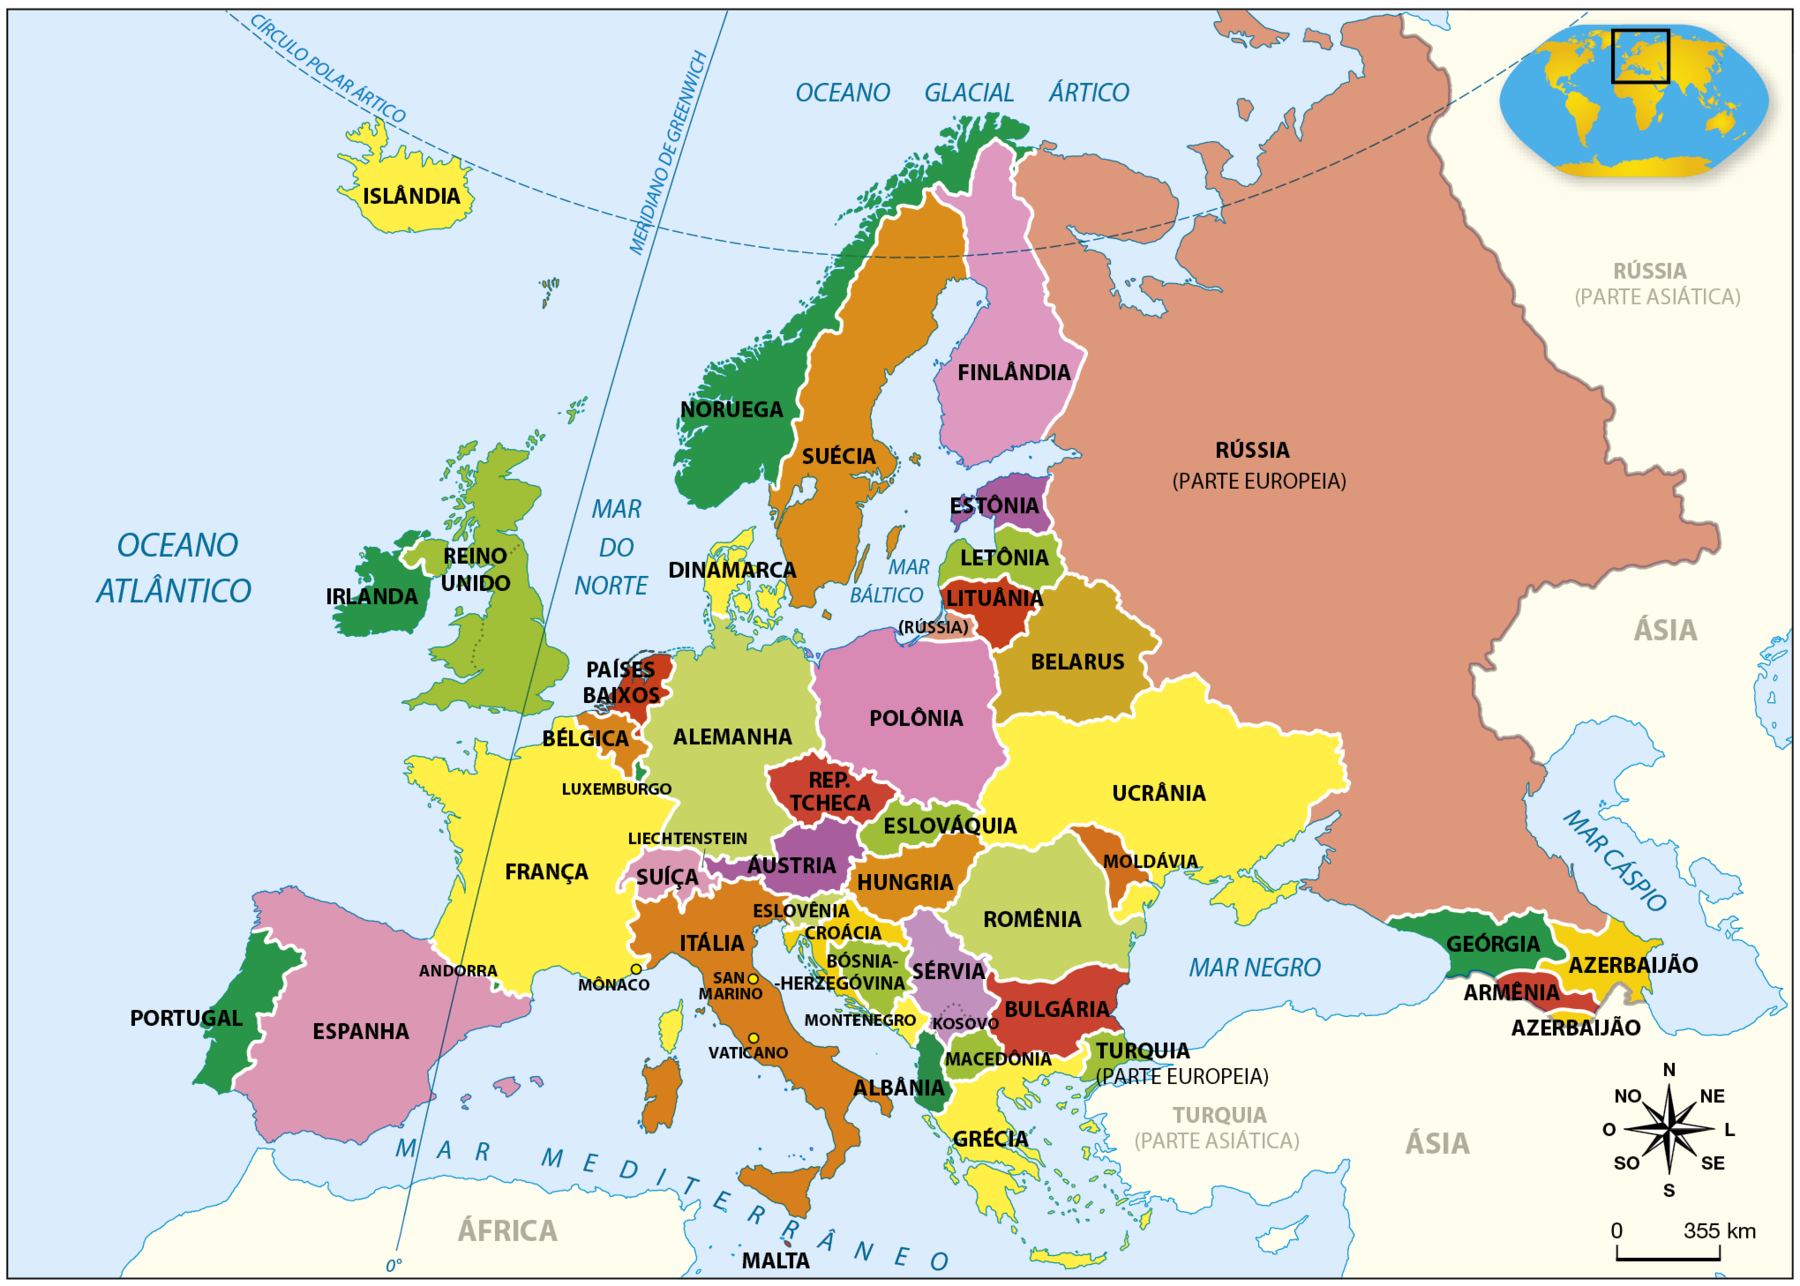 Mapa. Europa: Divisão Política. O mapa apresenta os países do continente europeu. Estão representados: Islândia, Noruega, Suécia, Finlândia, Rússia (parte europeia), Irlanda, Reino Unido, Dinamarca, Estônia, Letônia, Lituânia, Países Baixos, Alemanha, Polônia, Belarus, Bélgica, França, Luxemburgo, República Tcheca, Eslováquia, Ucrânia, Suíça, Liechtenstein, Áustria, Hungria, Romênia, Moldávia, Espanha, Andorra, Mônaco, Itália,  Eslovênia, Croácia, Sérvia,  Romênia, Portugal, Bósnia-Herzegovina, Kosovo, San Marino, Vaticano, Montenegro, Bulgária, Geórgia, Azerbaijão, Albânia, Macedônia, Turquia (parte europeia), Armênia, Grécia e Malta. Os países estão representados por diferentes cores. O Oceano Atlântico, à oeste da Europa, os mares Mediterrâneo e Negro, ao sul, além de outros mares, também estão representados. No canto inferior direito, rosa dos ventos e escala de 0 a 355 quilômetros.